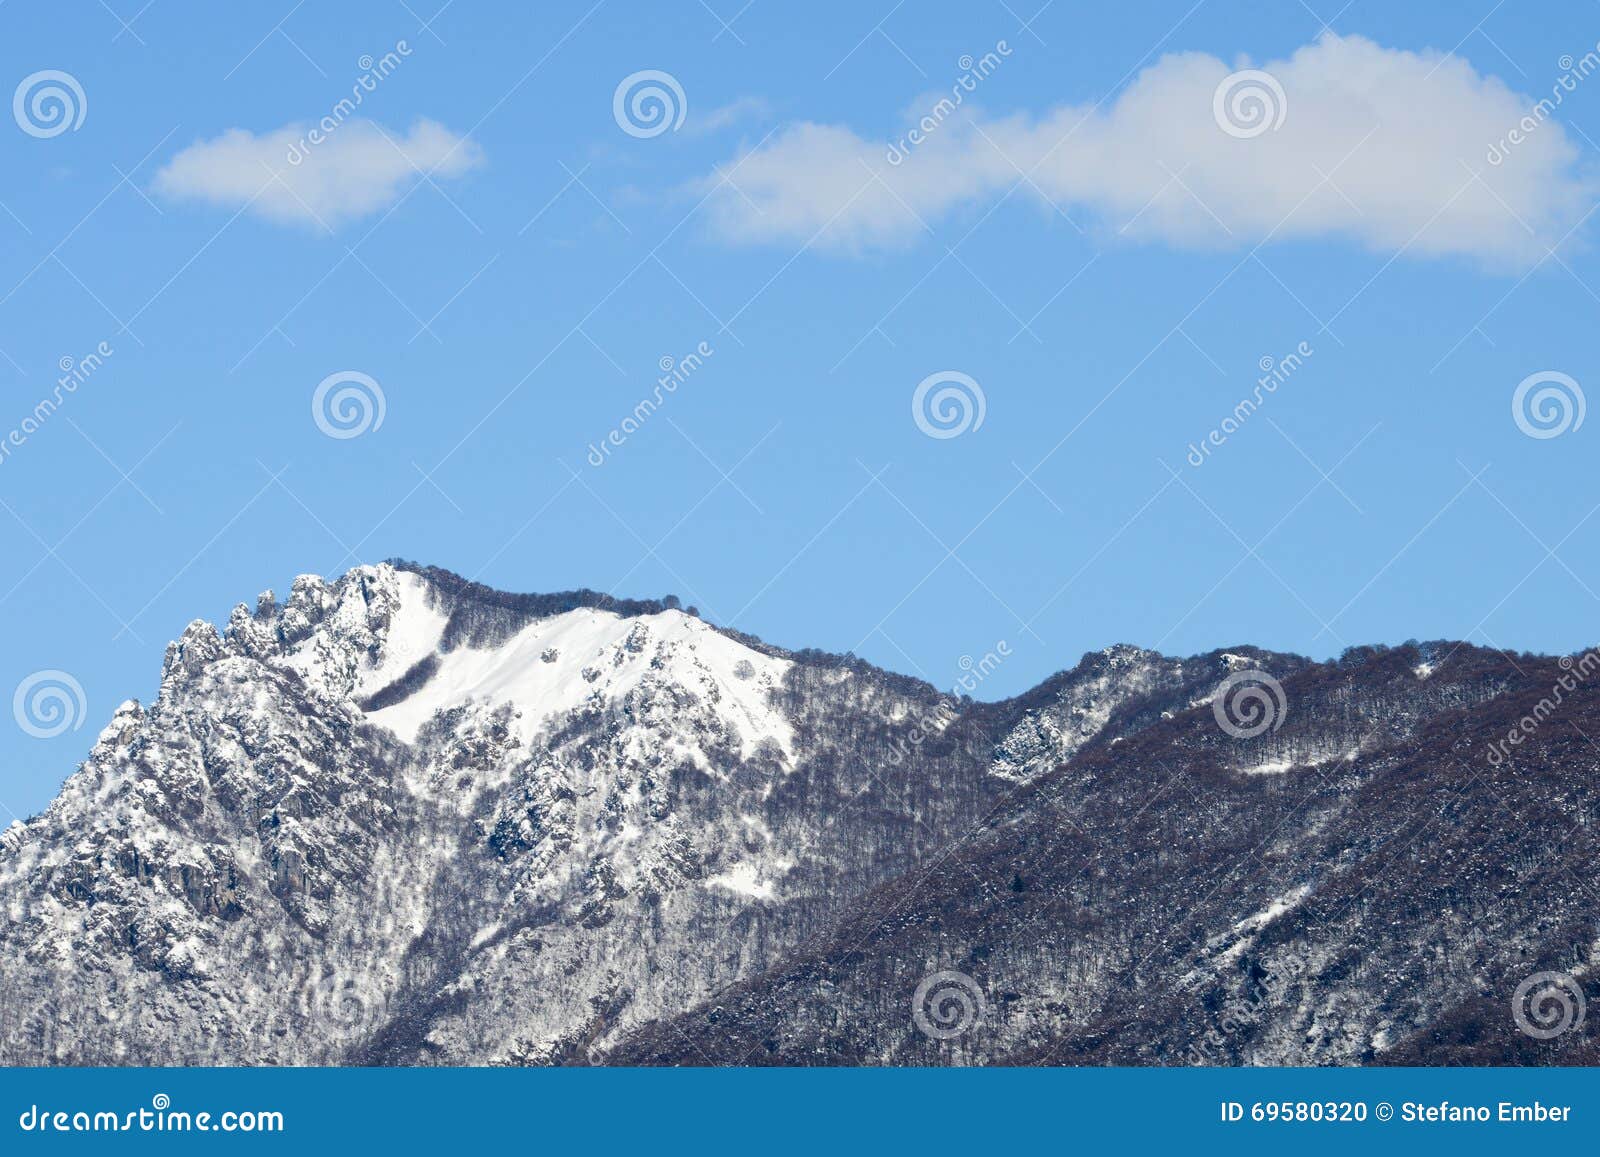 mountain named denti della vecchia over lugano